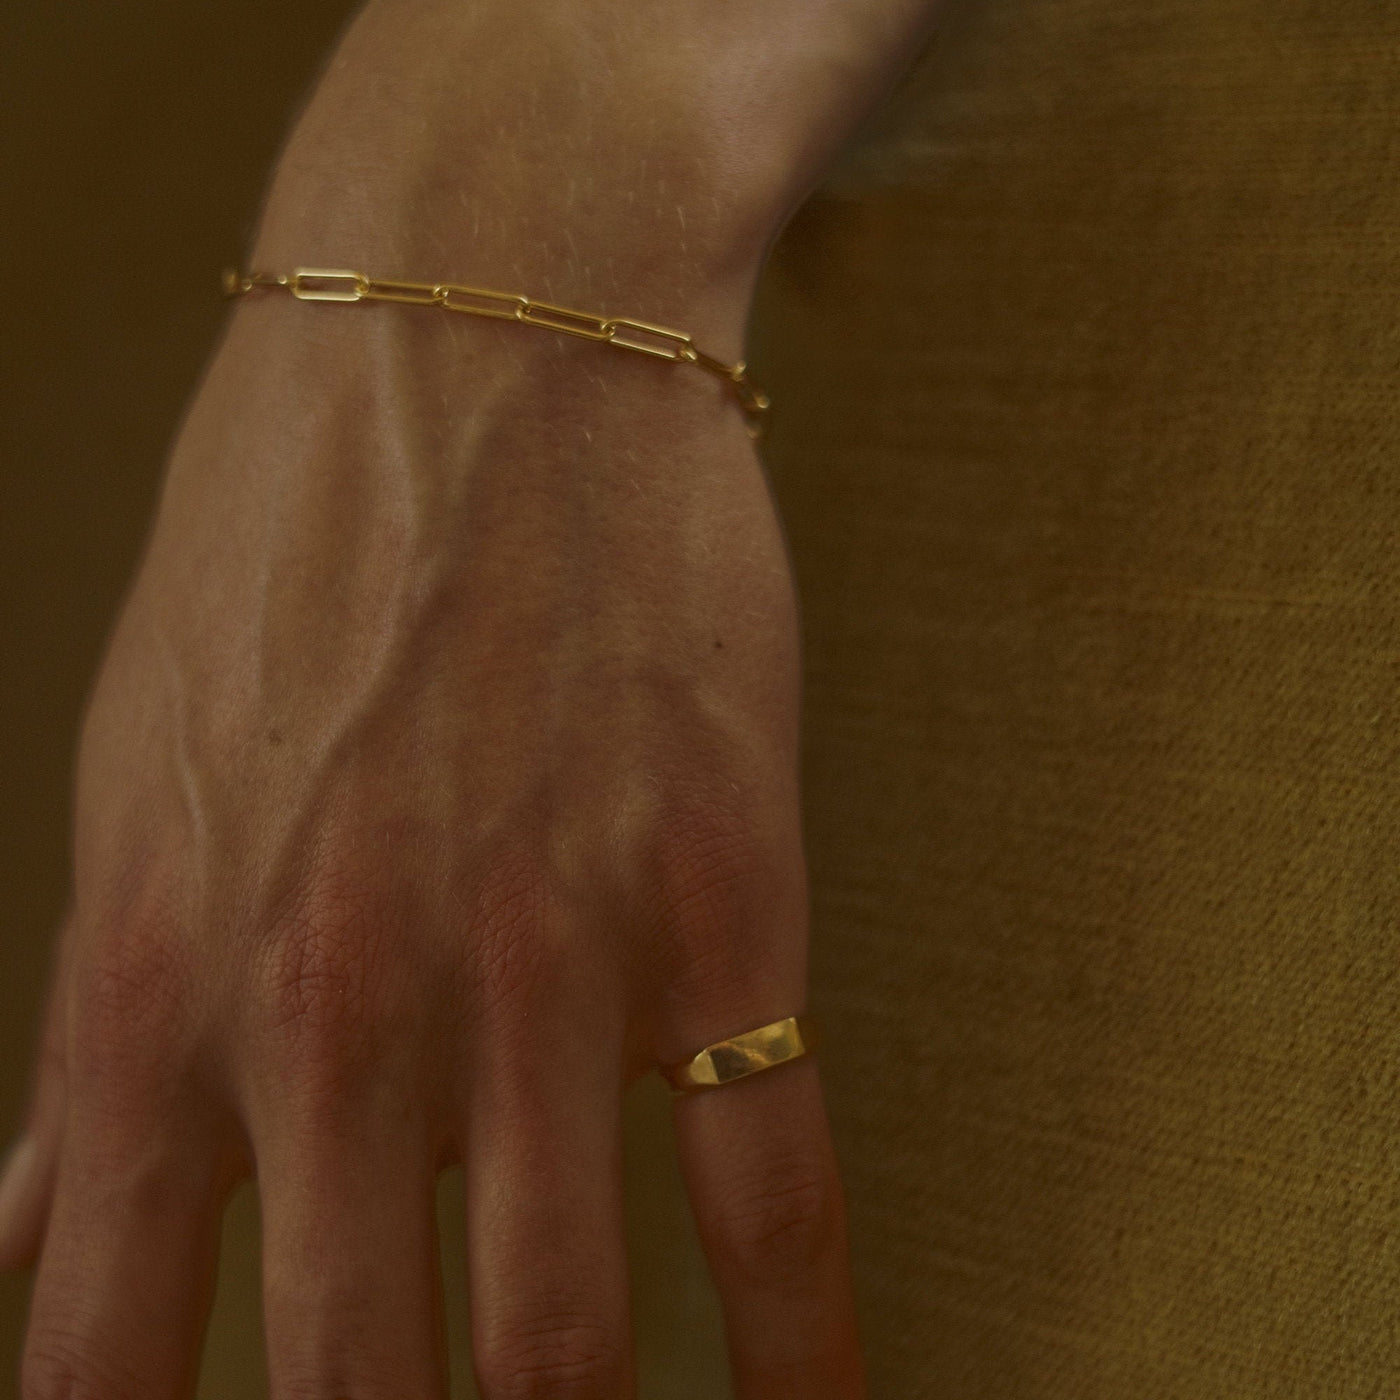 MEDUSA – Armband in Gold, Roségold oder Silber